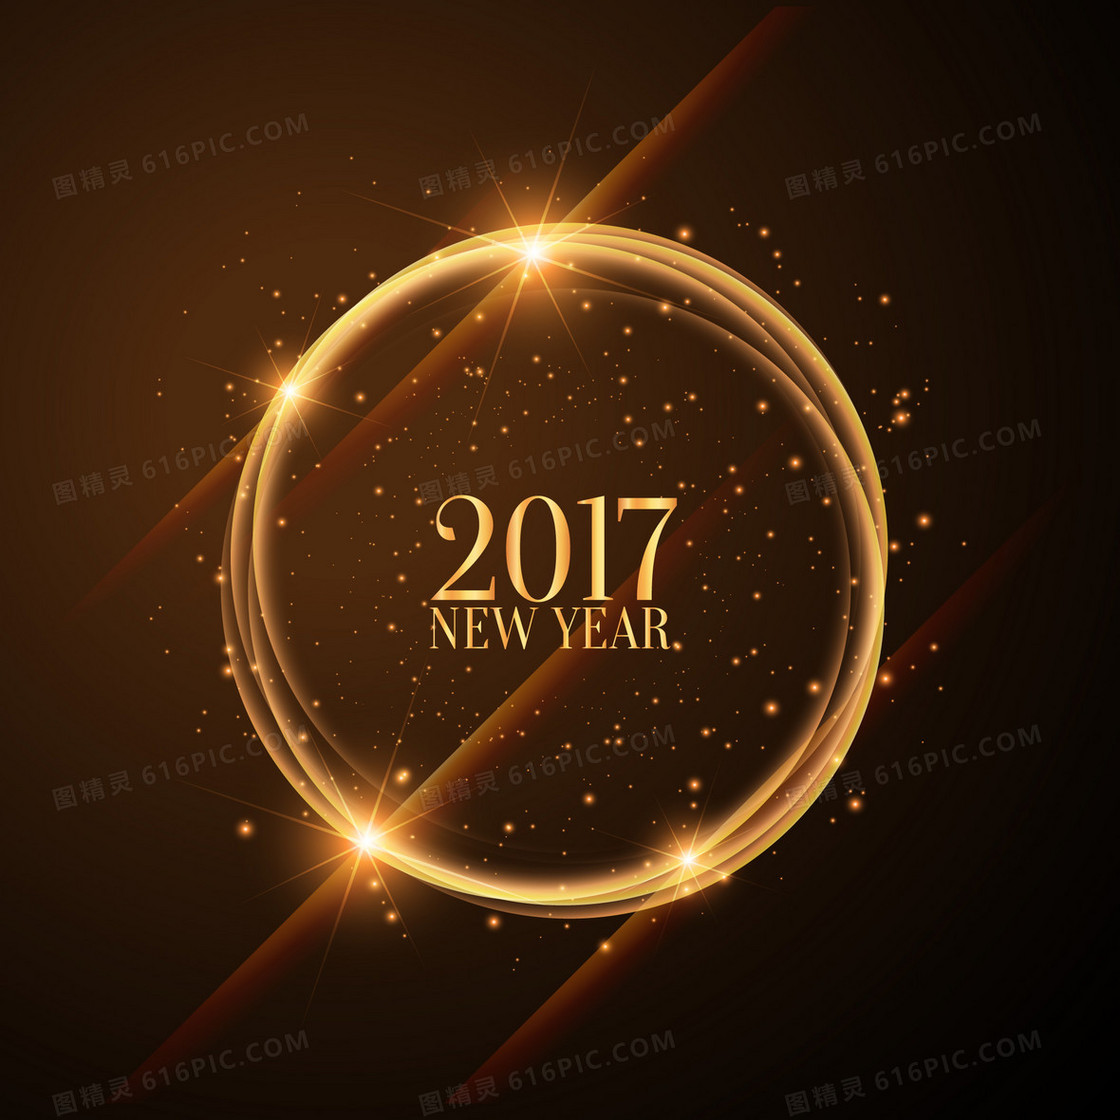 2017新年狂欢金色背景素材